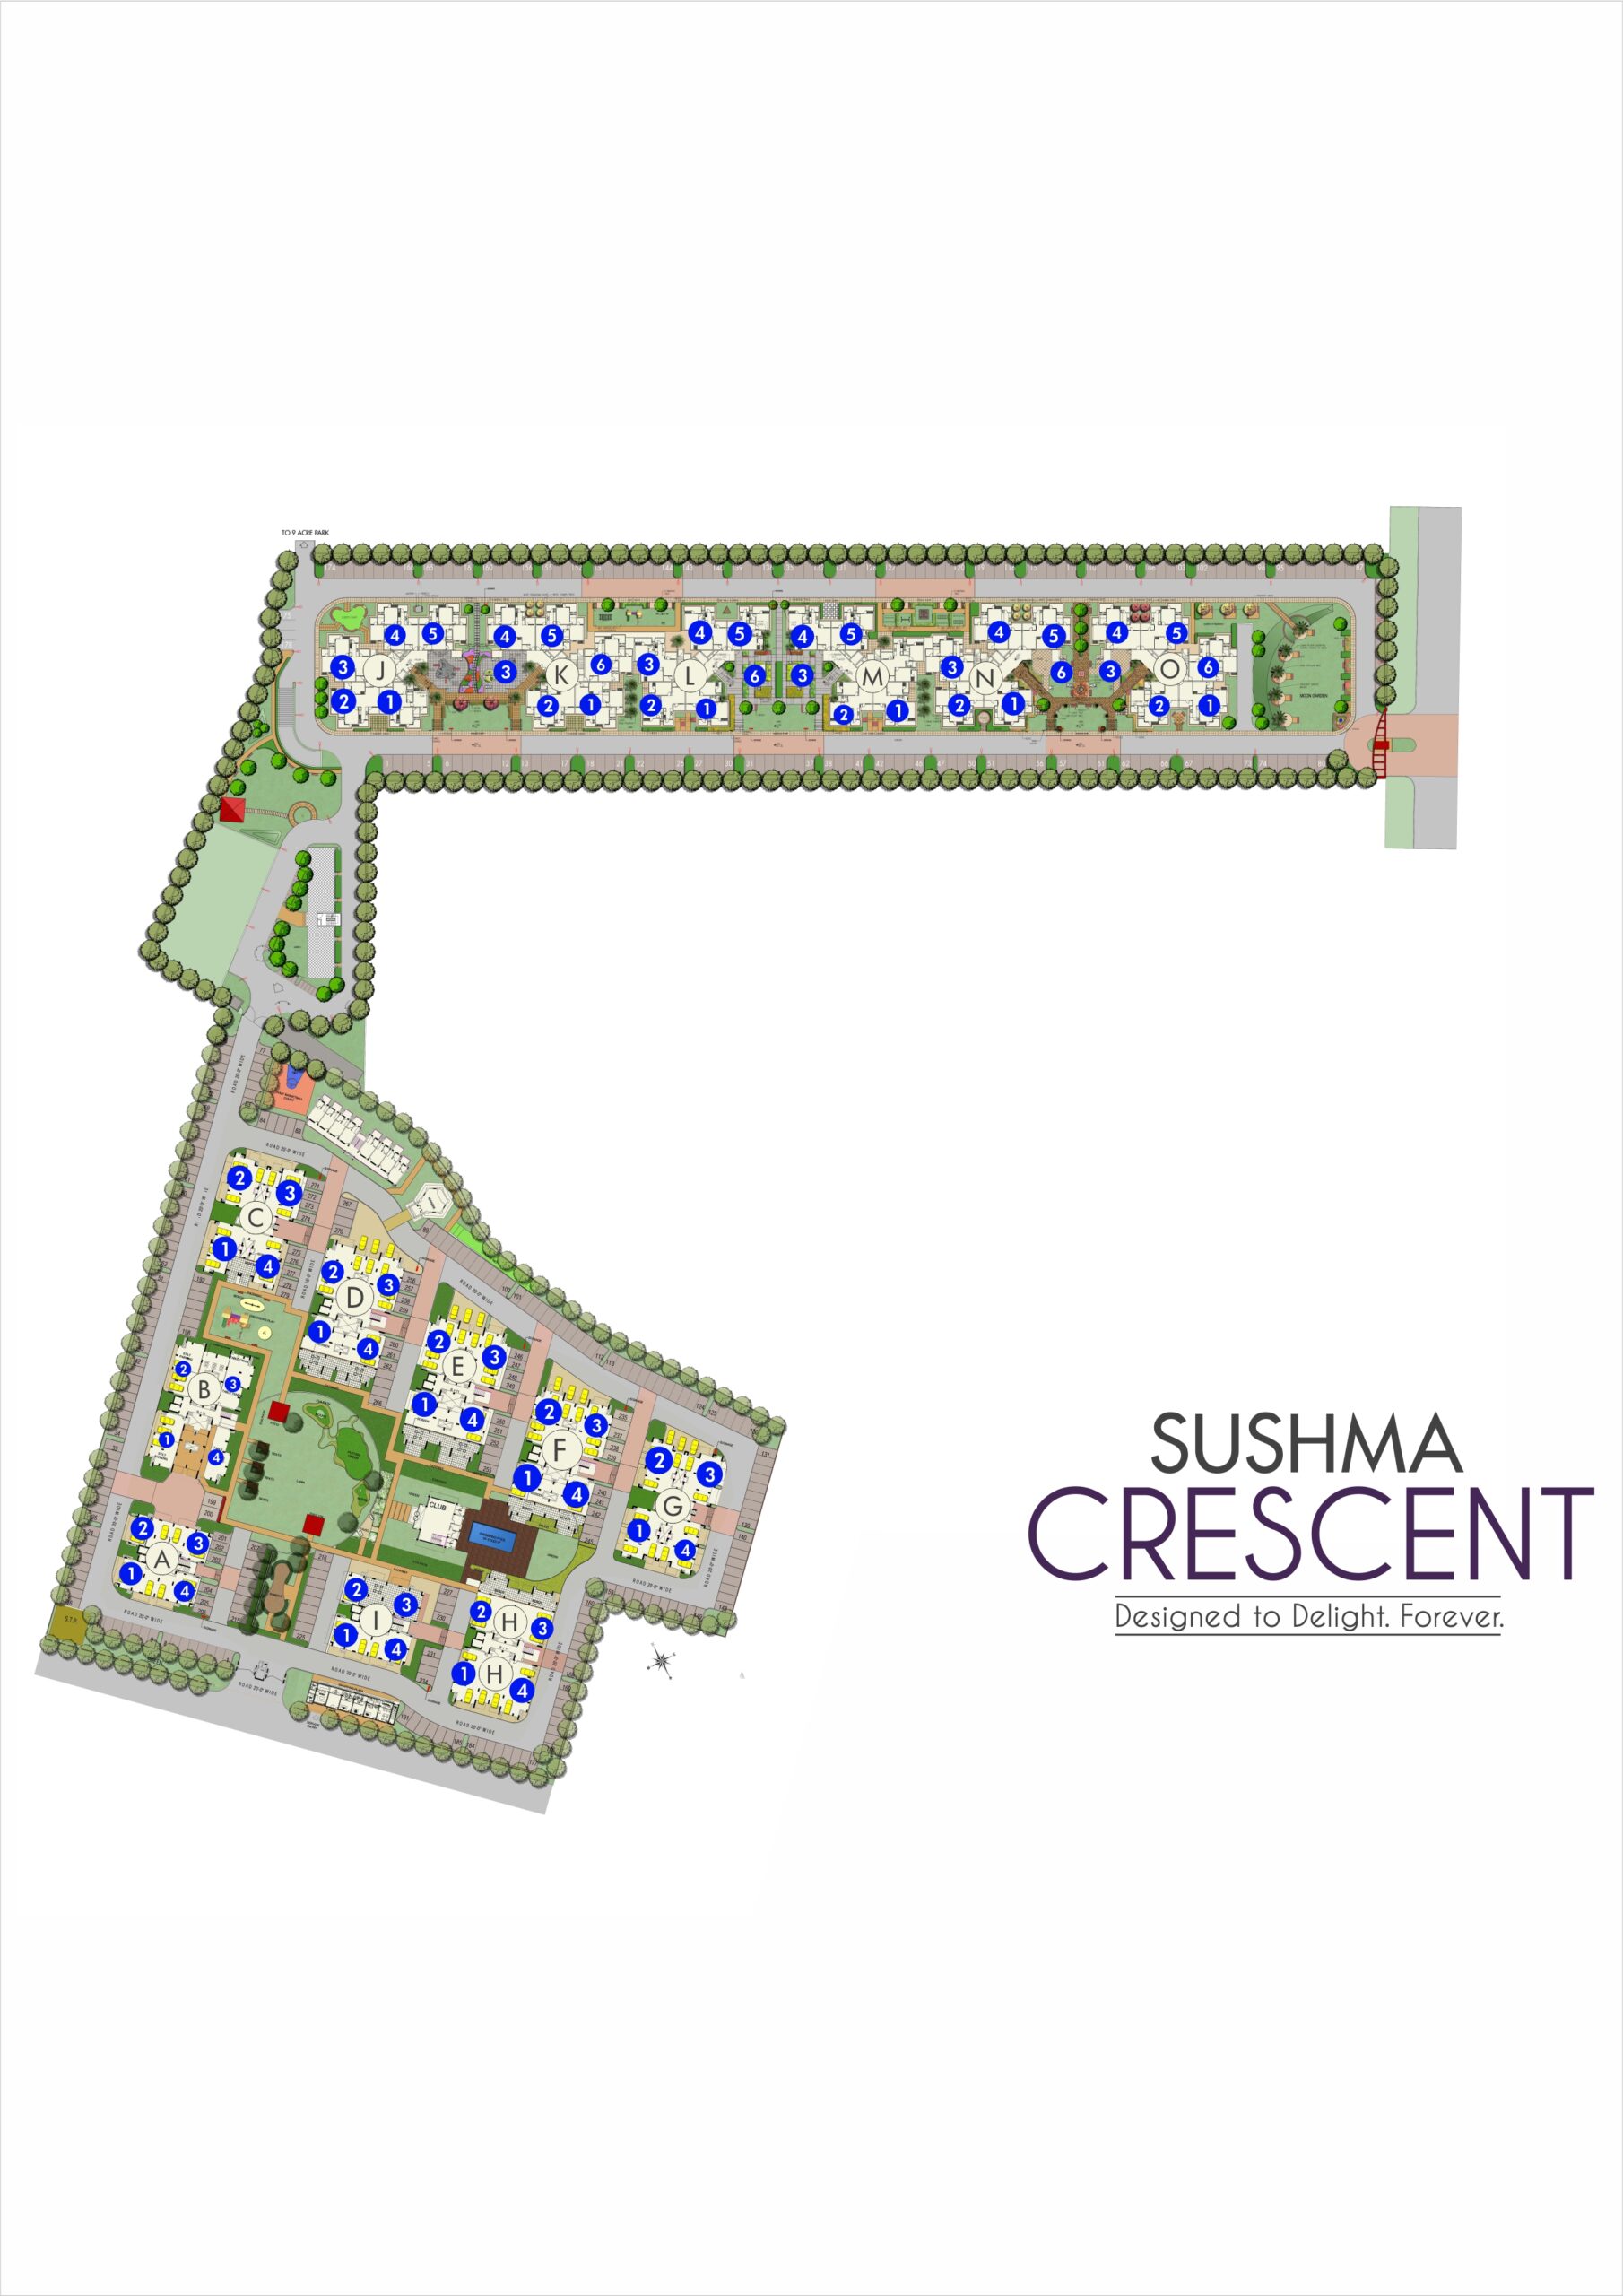 Site Plan of Sushma Crescent Zirakpur